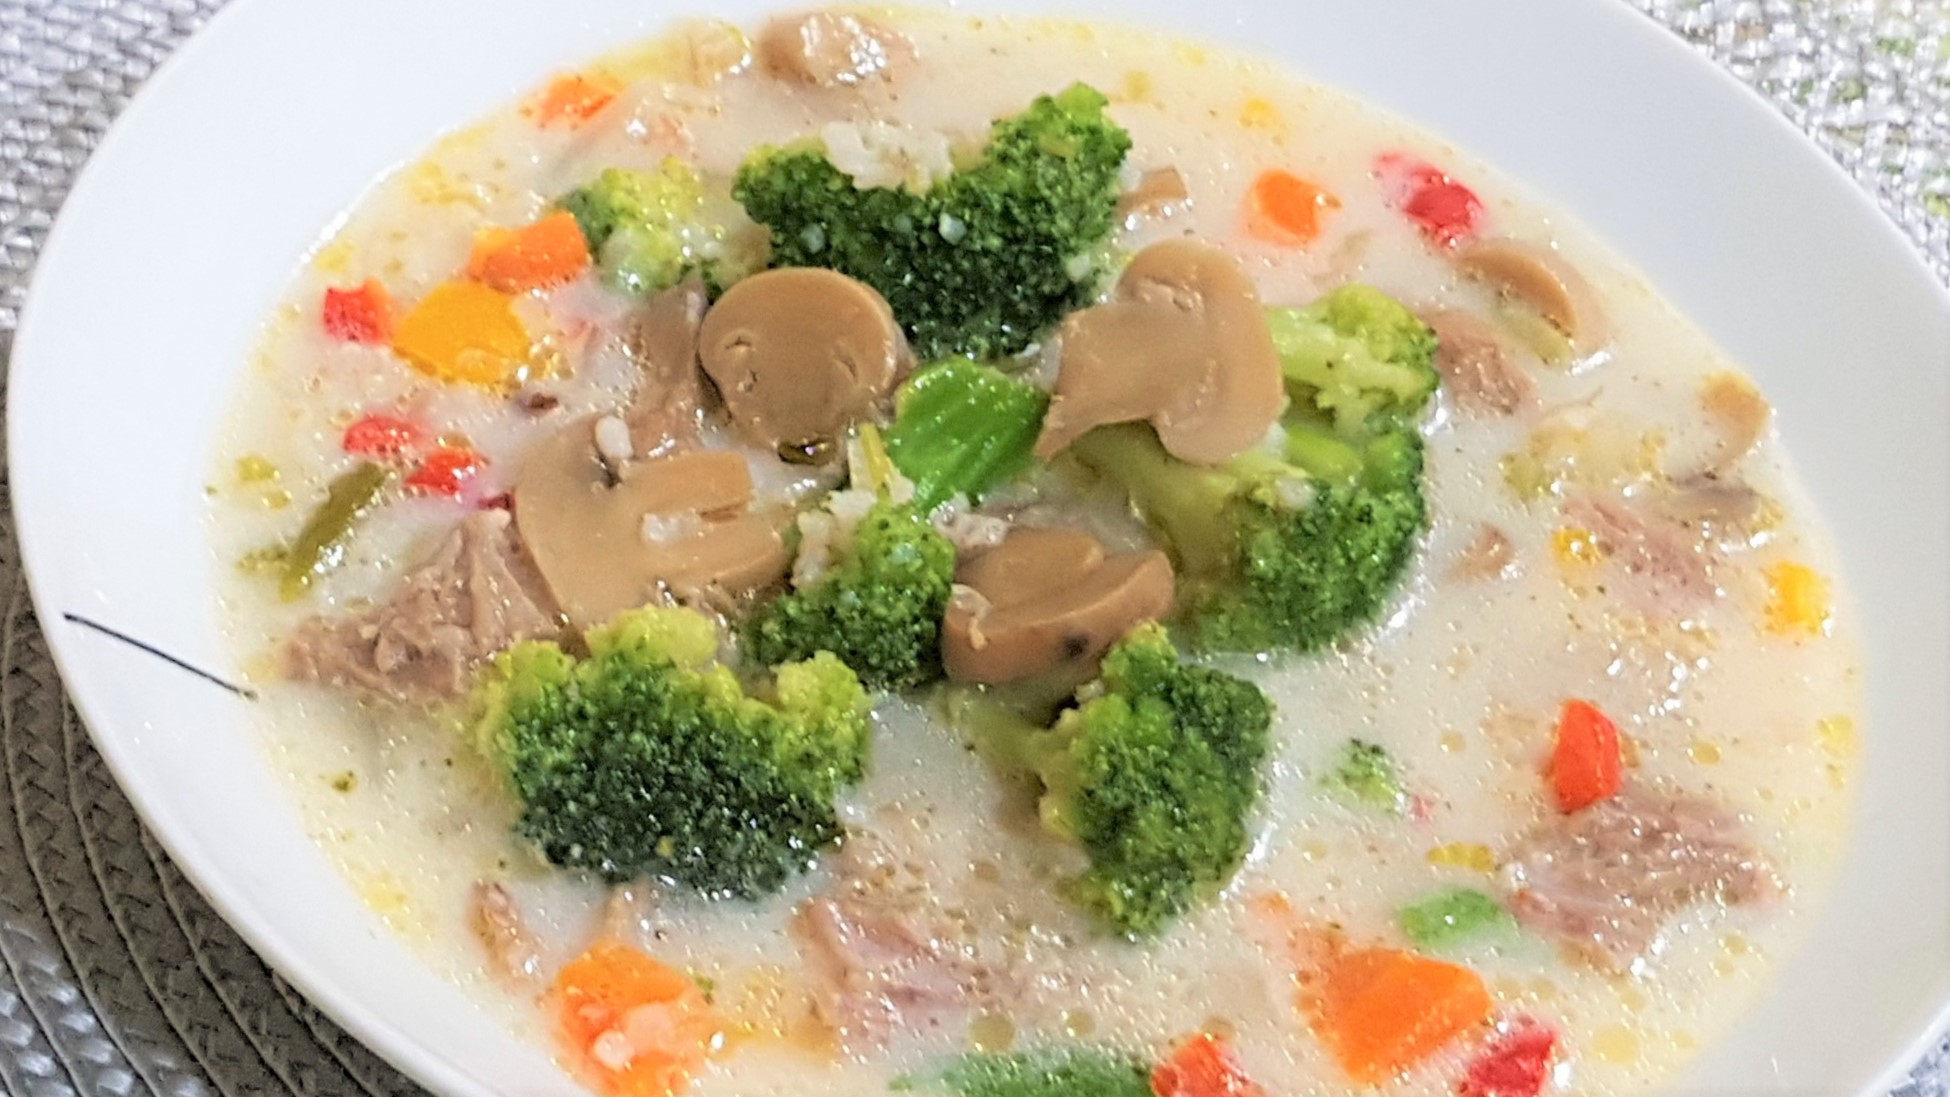 Supa de broccoli cu ciuperci